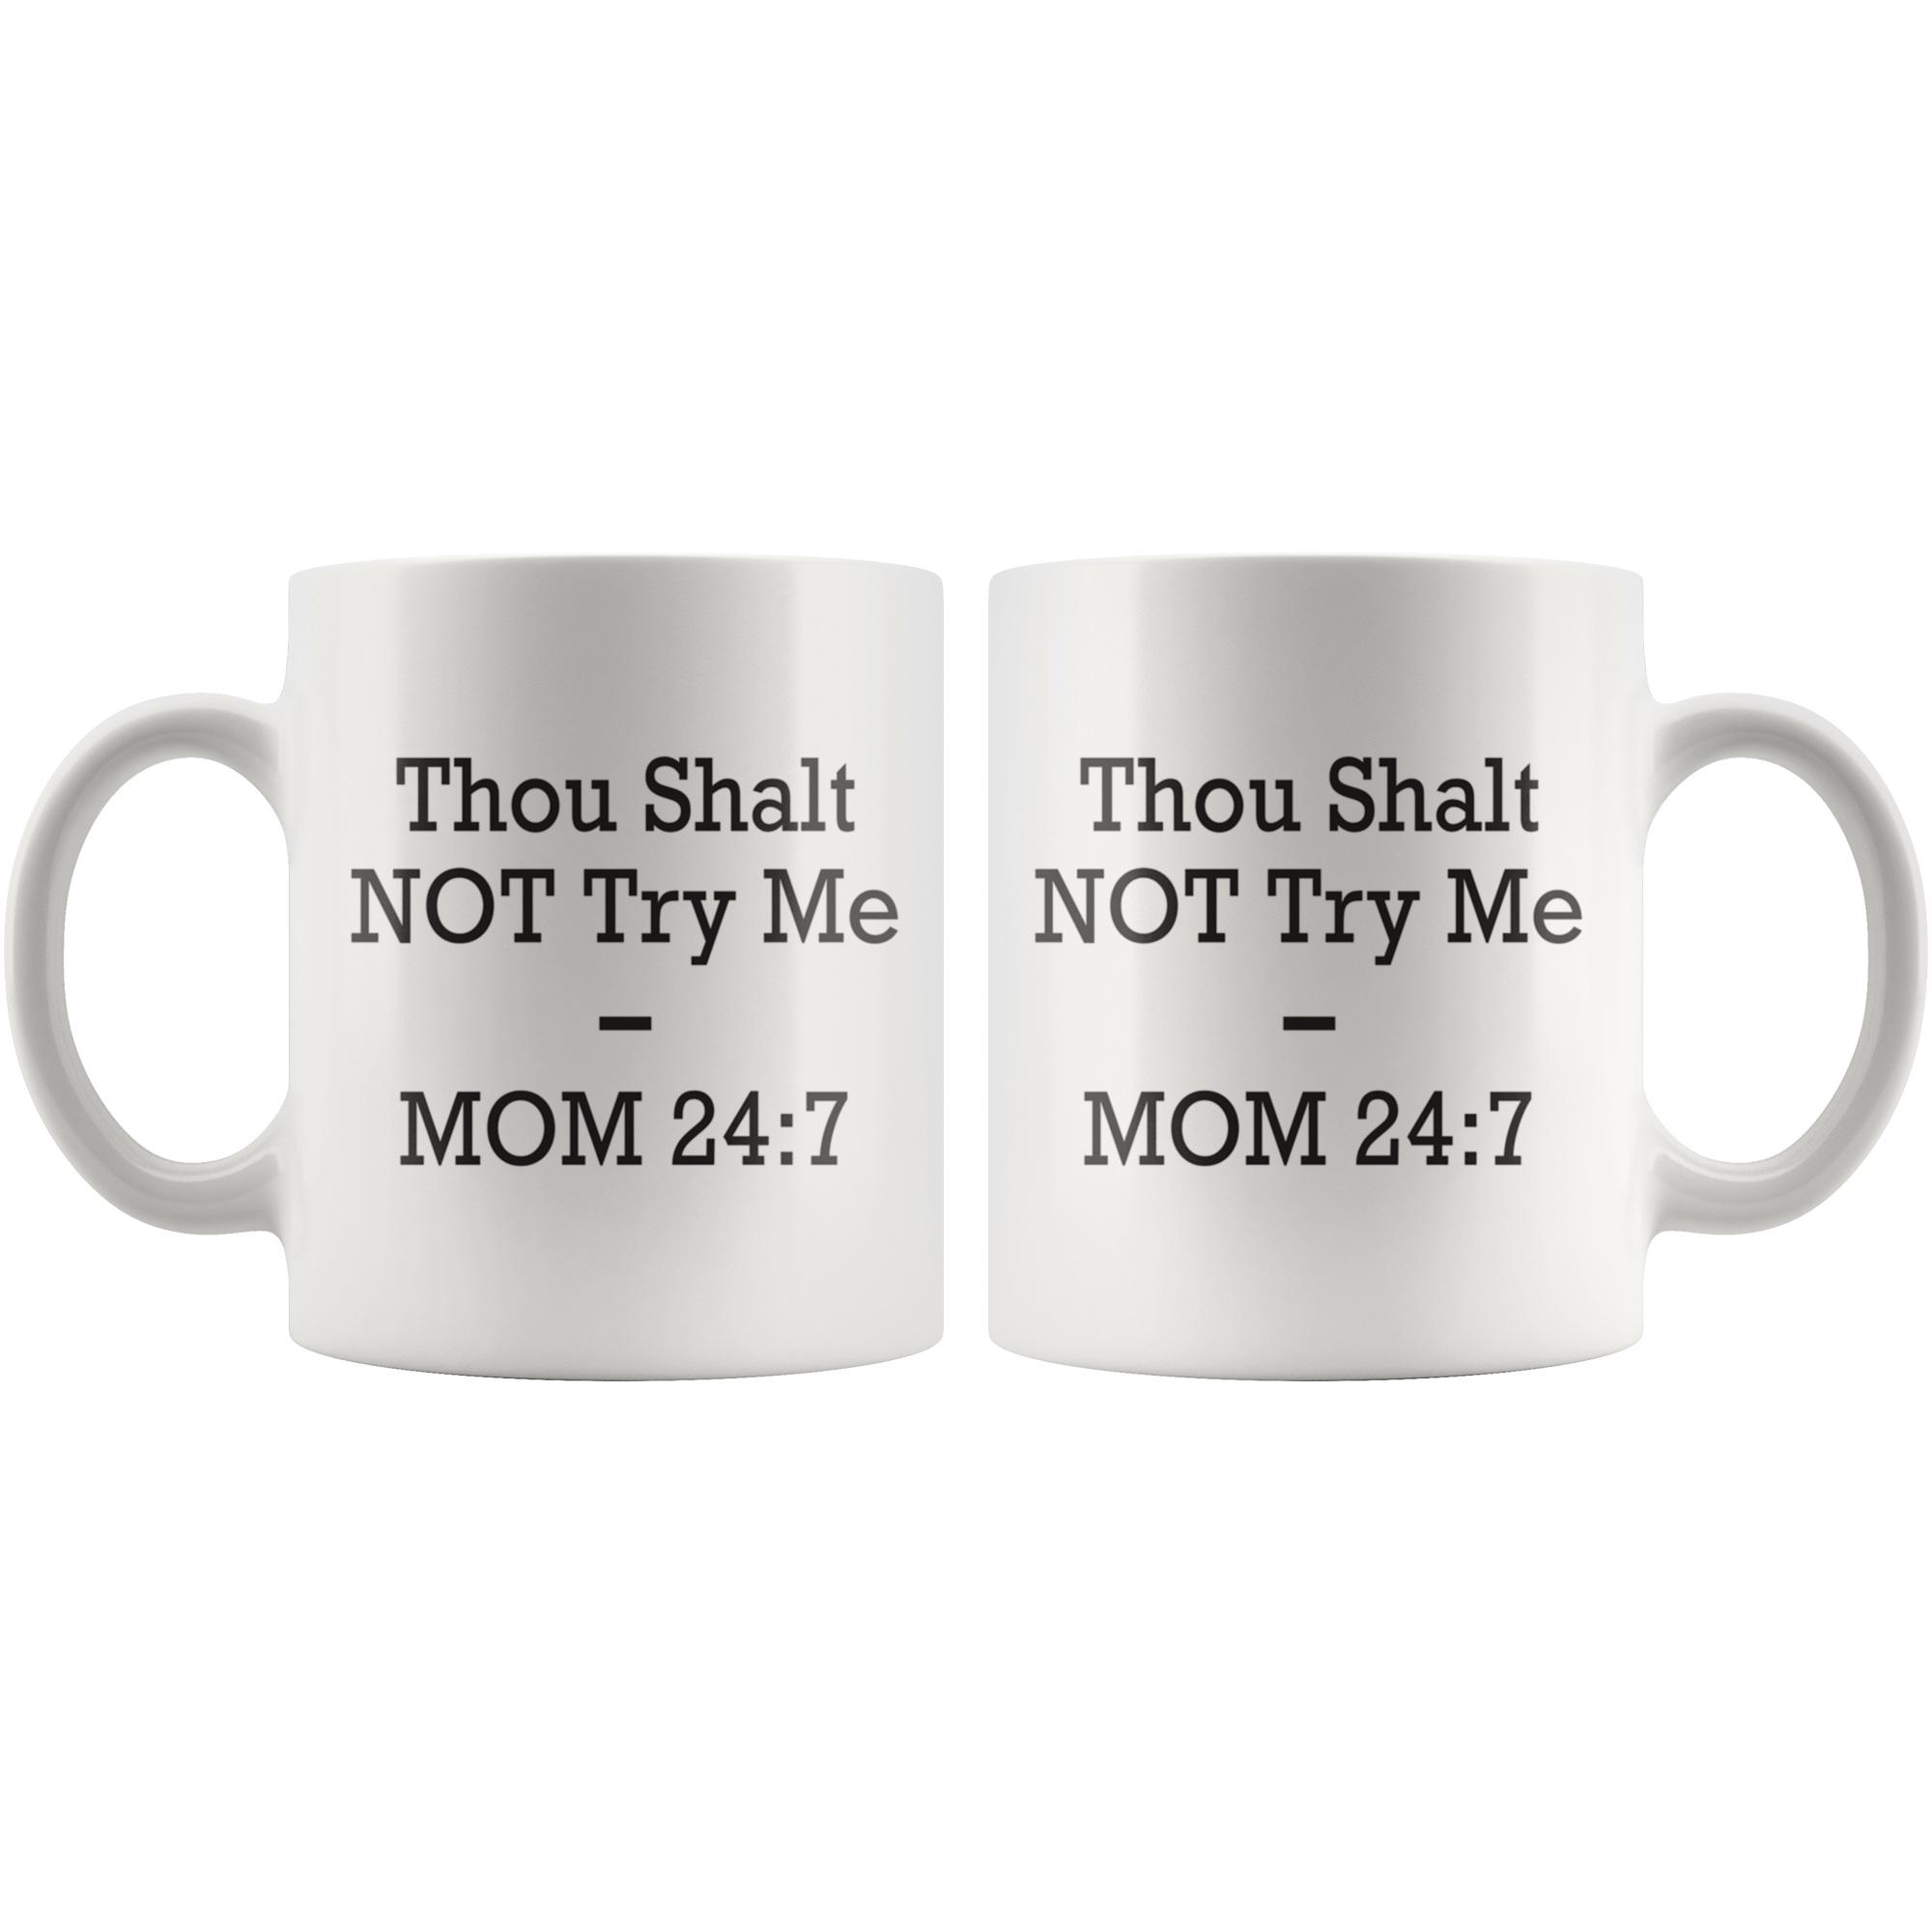 Thou Shalt NOT Try Me Coffee Mug